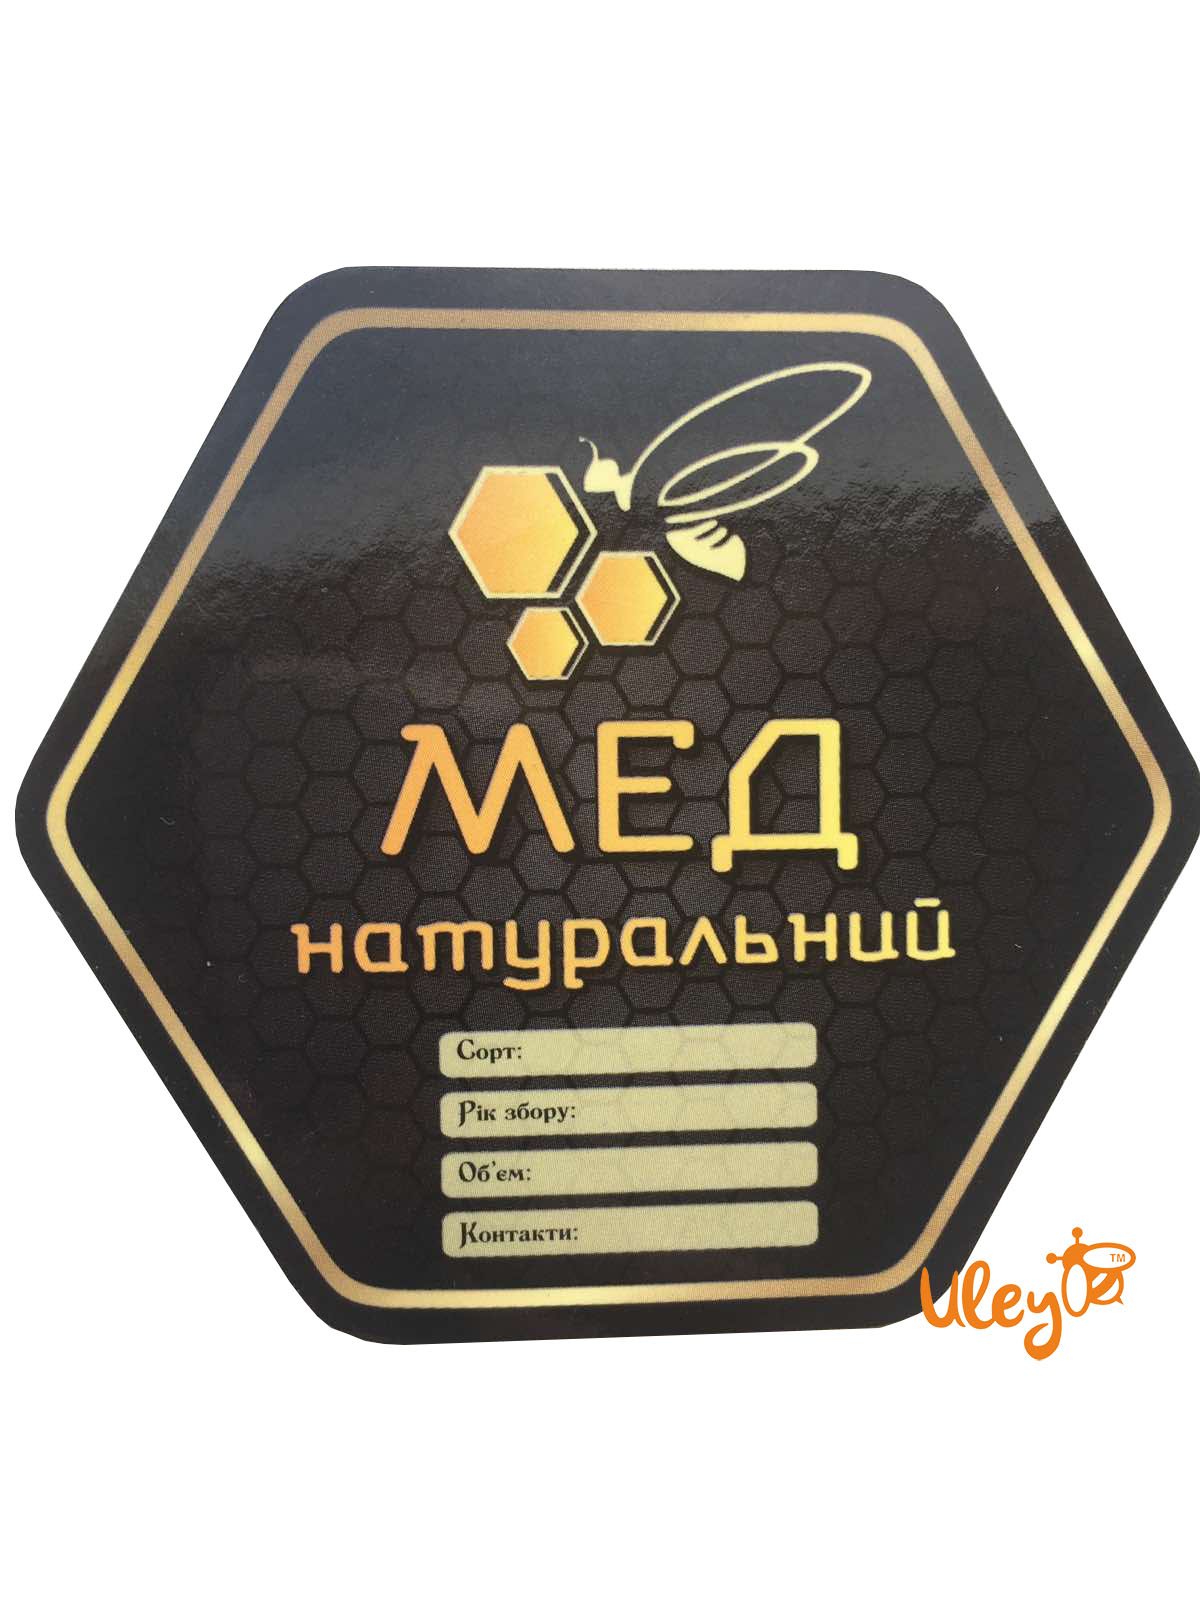 Этикетки на мед в Москве | Печать по дешевой цене